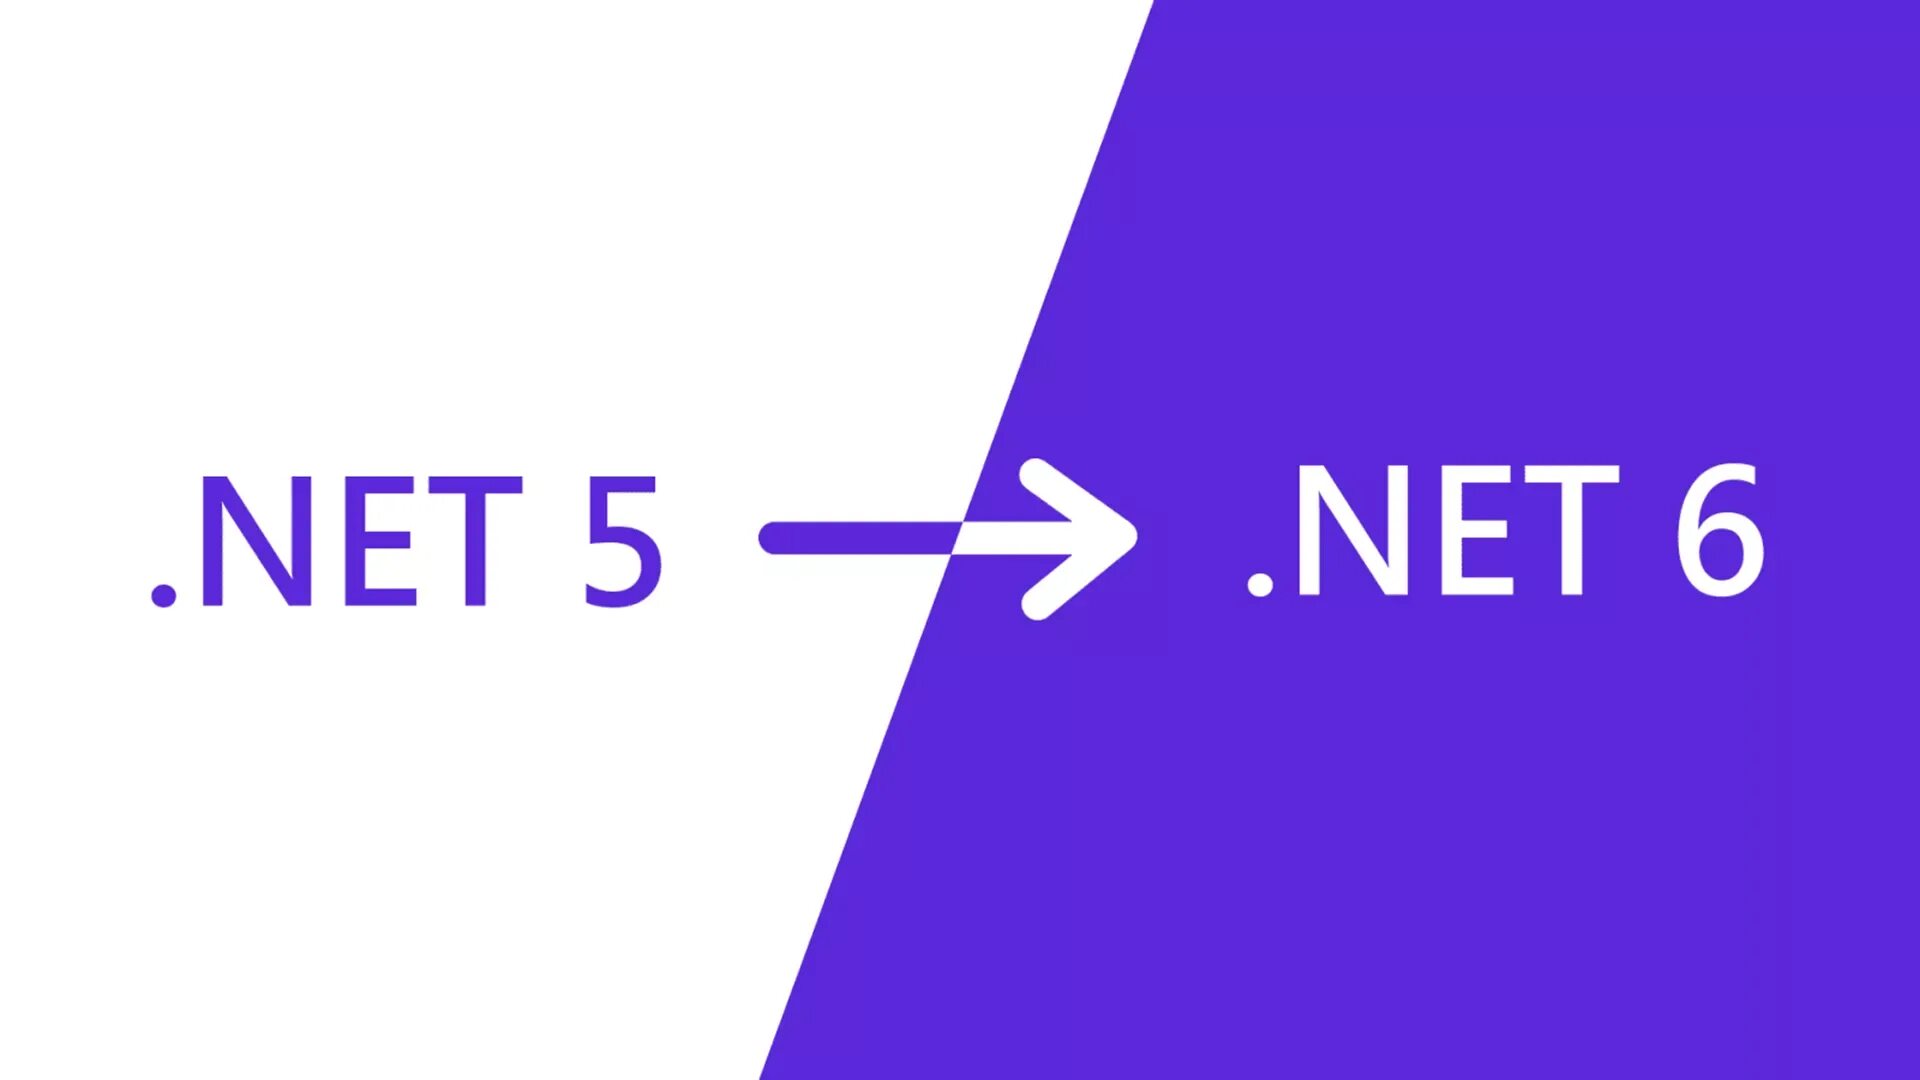 .Net 5. .Net 6. .Net 6.0. .Net 6 LTS.